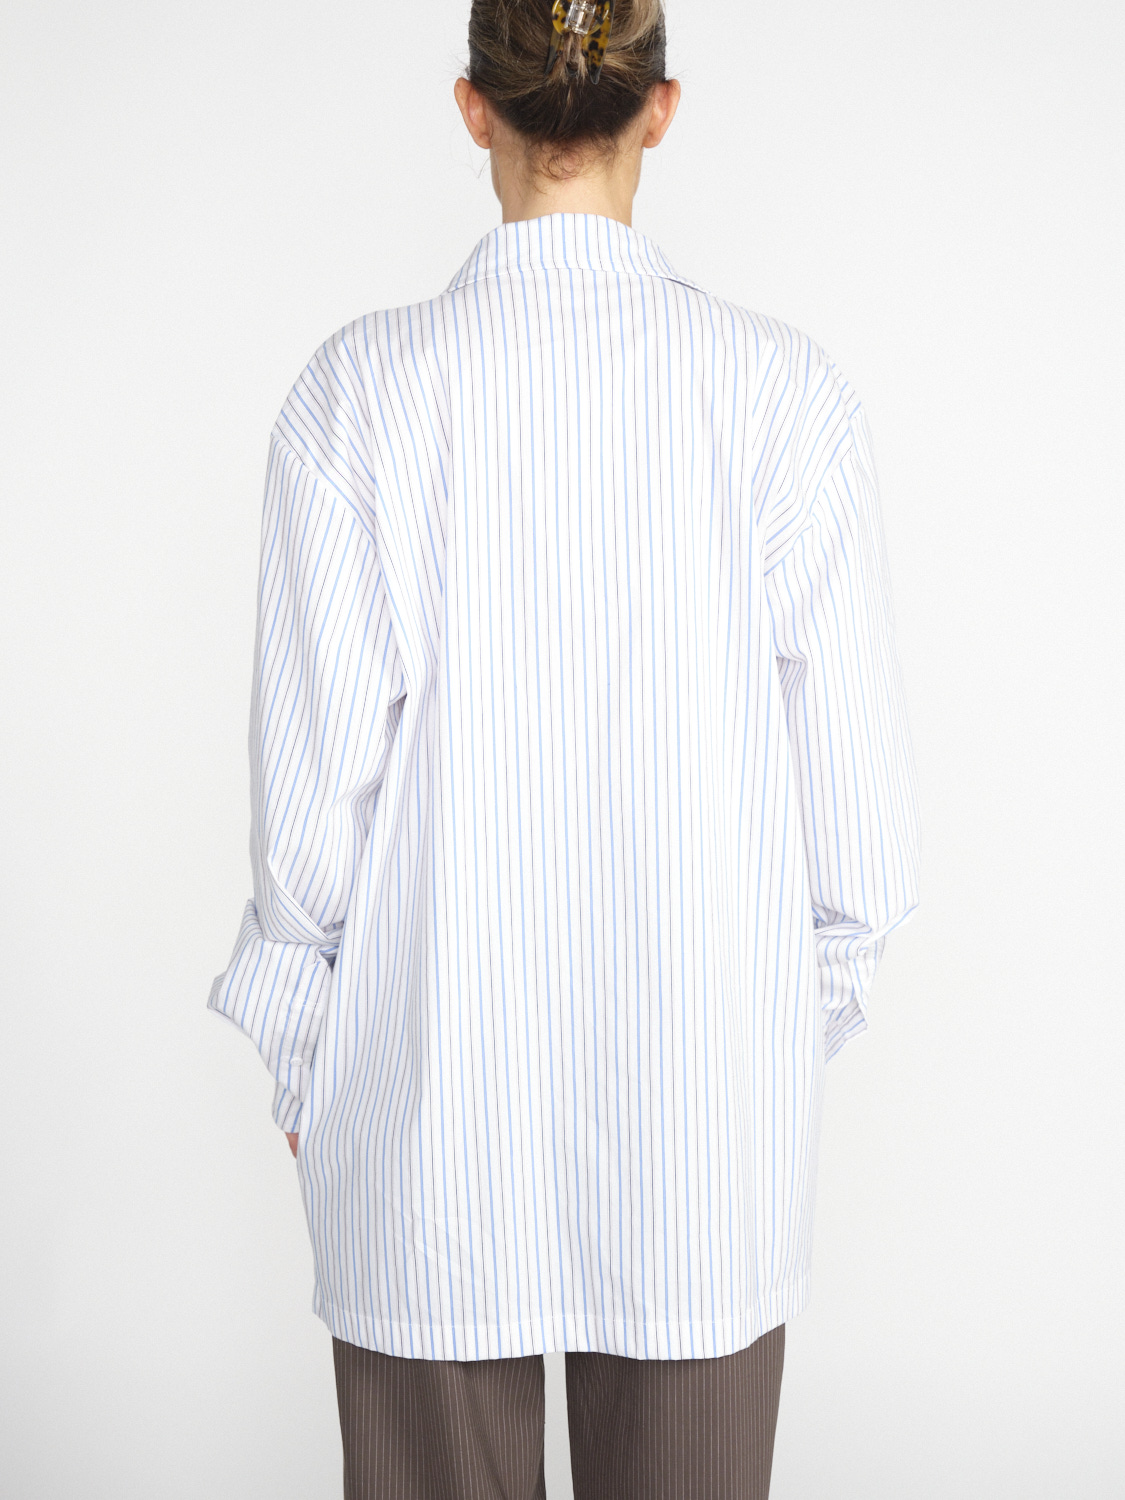 Ottolinger Oversized Hemd mit Streifen-Design white S